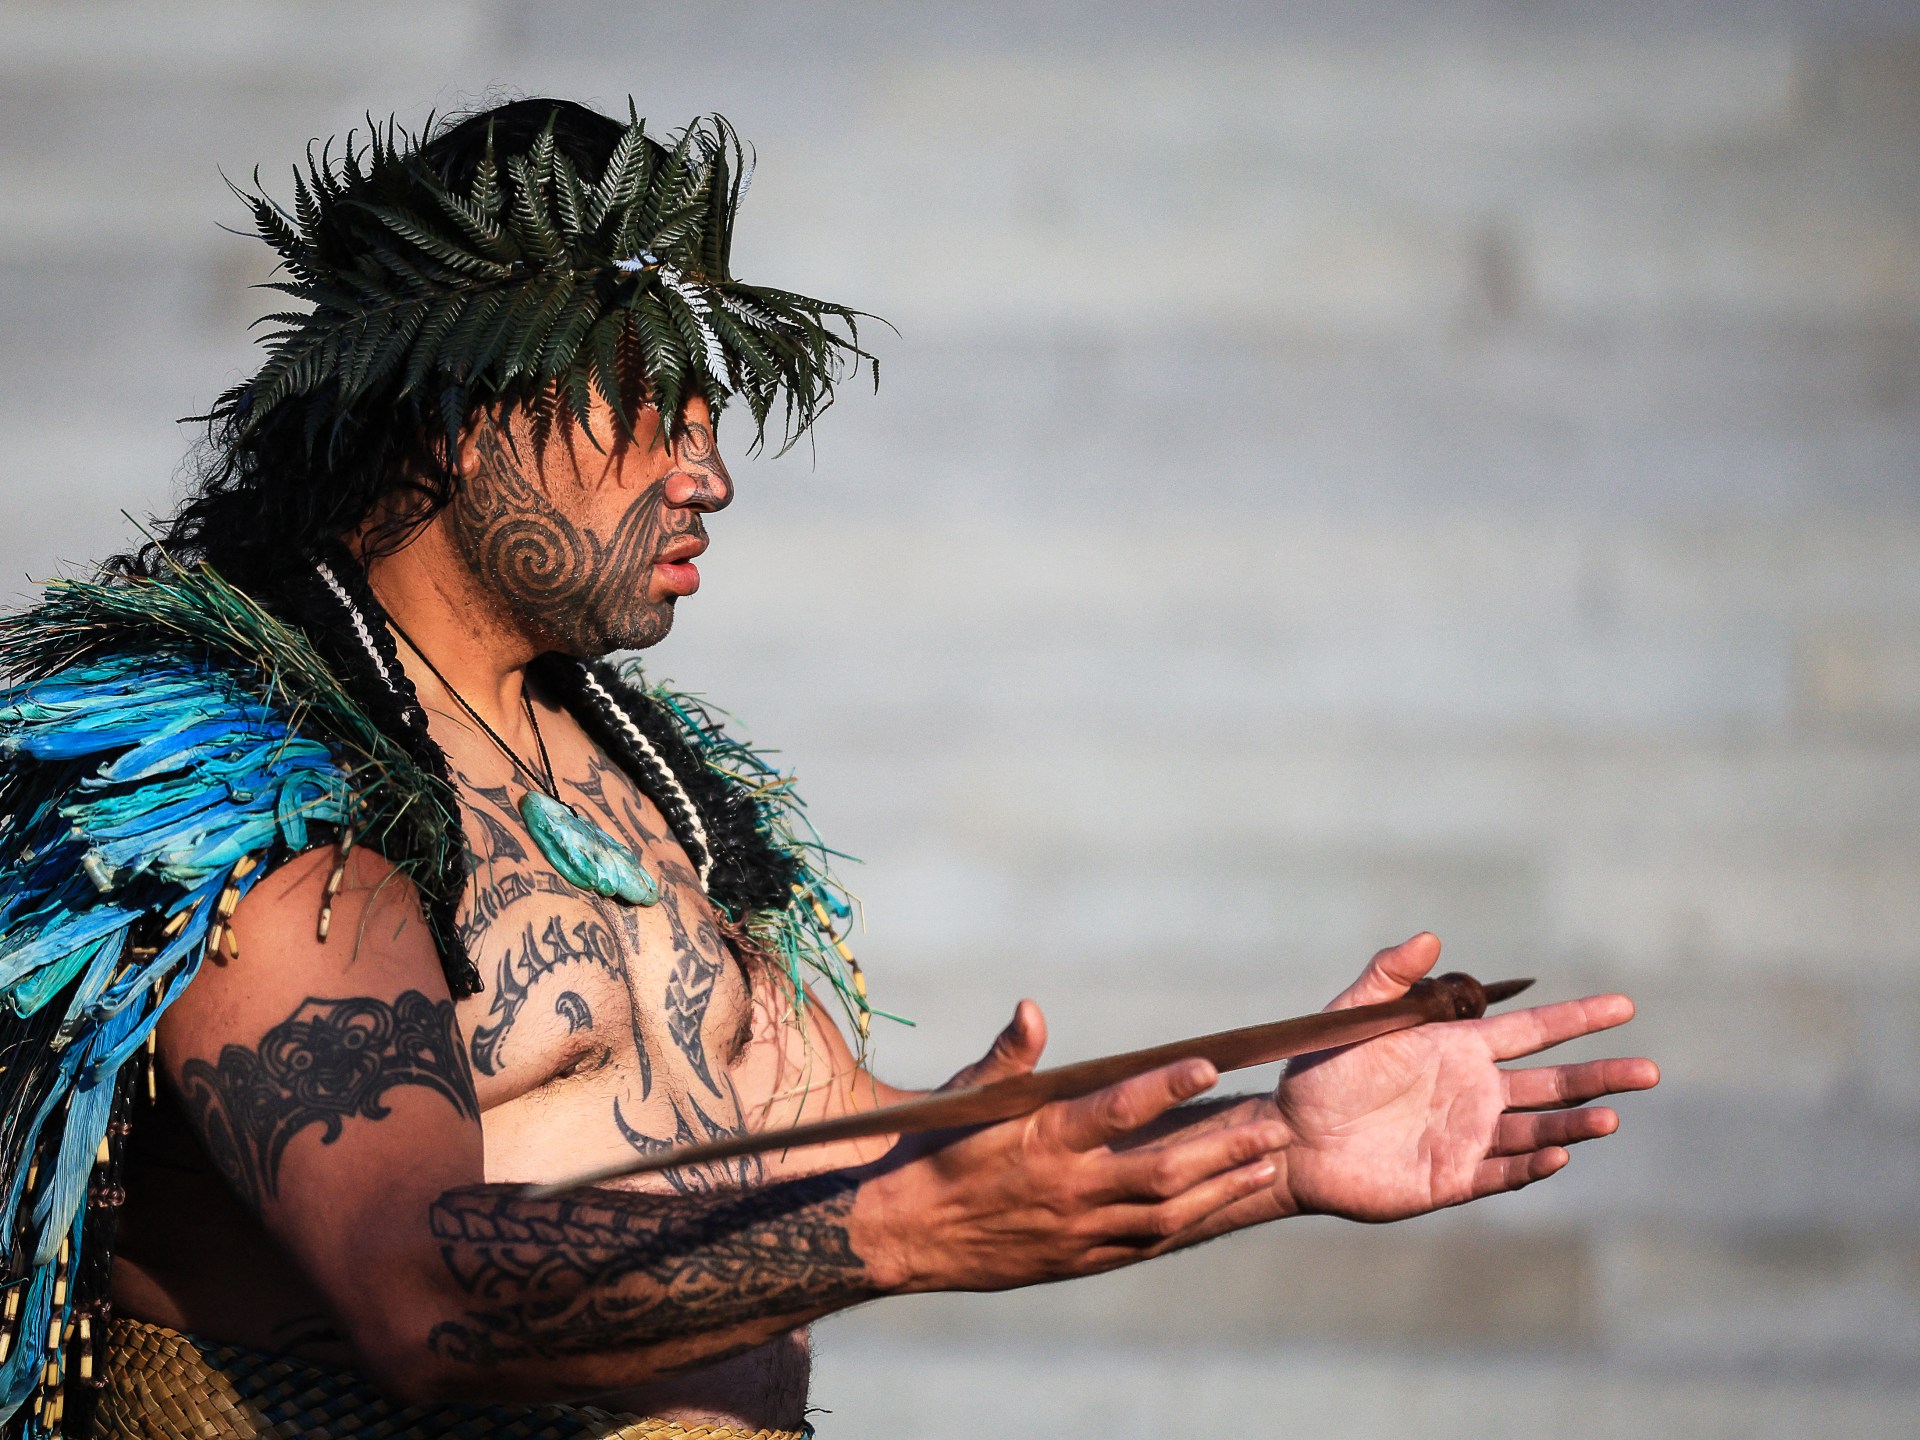 Perché il re della Nuova Zelanda convocò i Maori a un incontro nazionale?  |  Notizie sui diritti degli indigeni